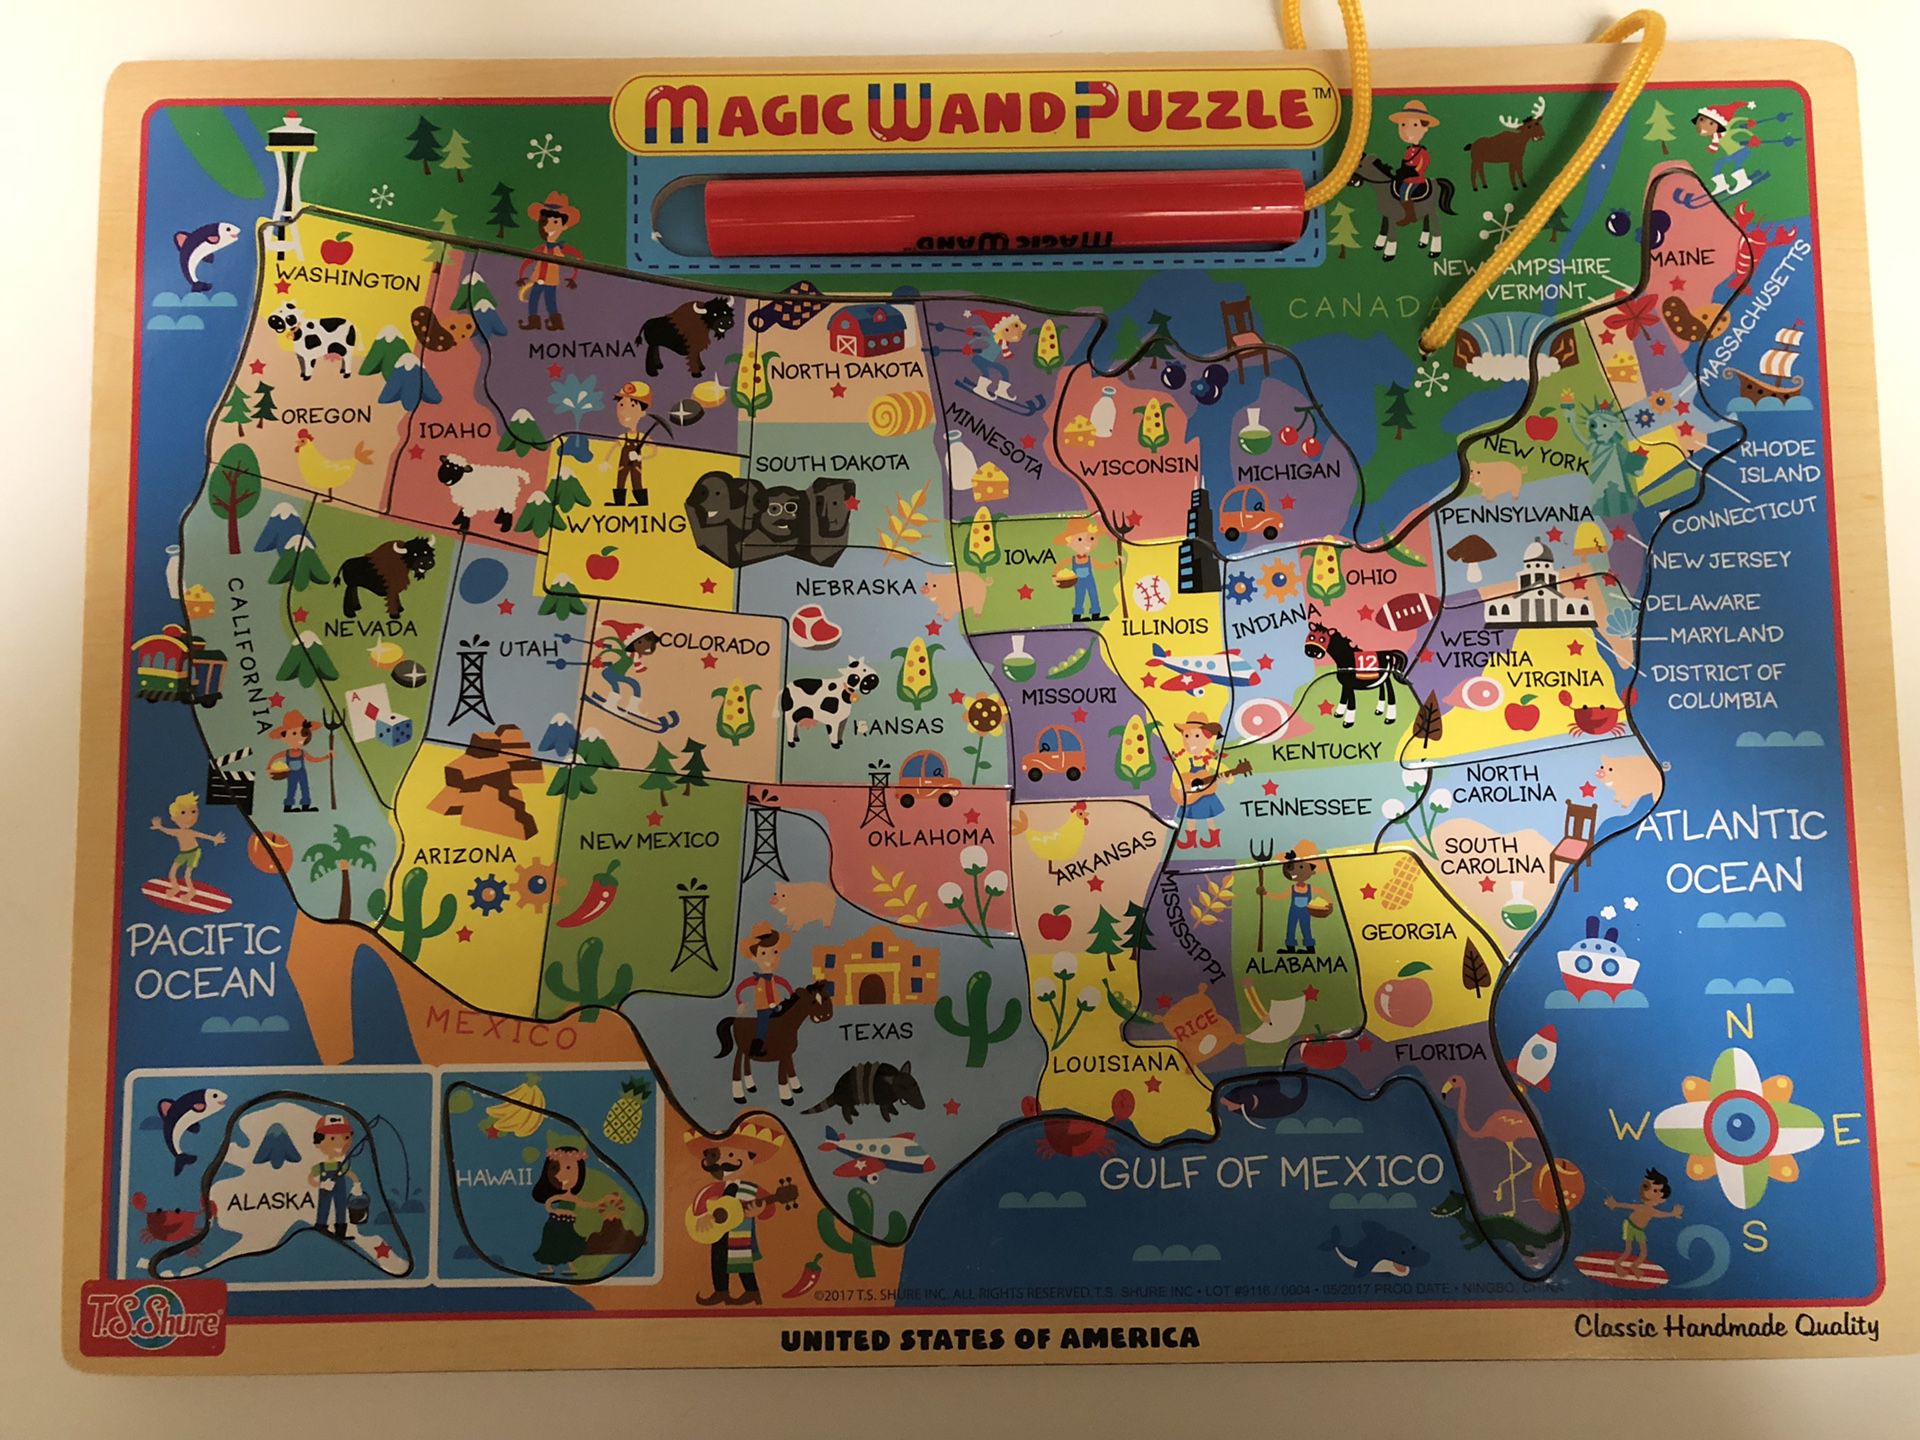 Unites states map puzzle game